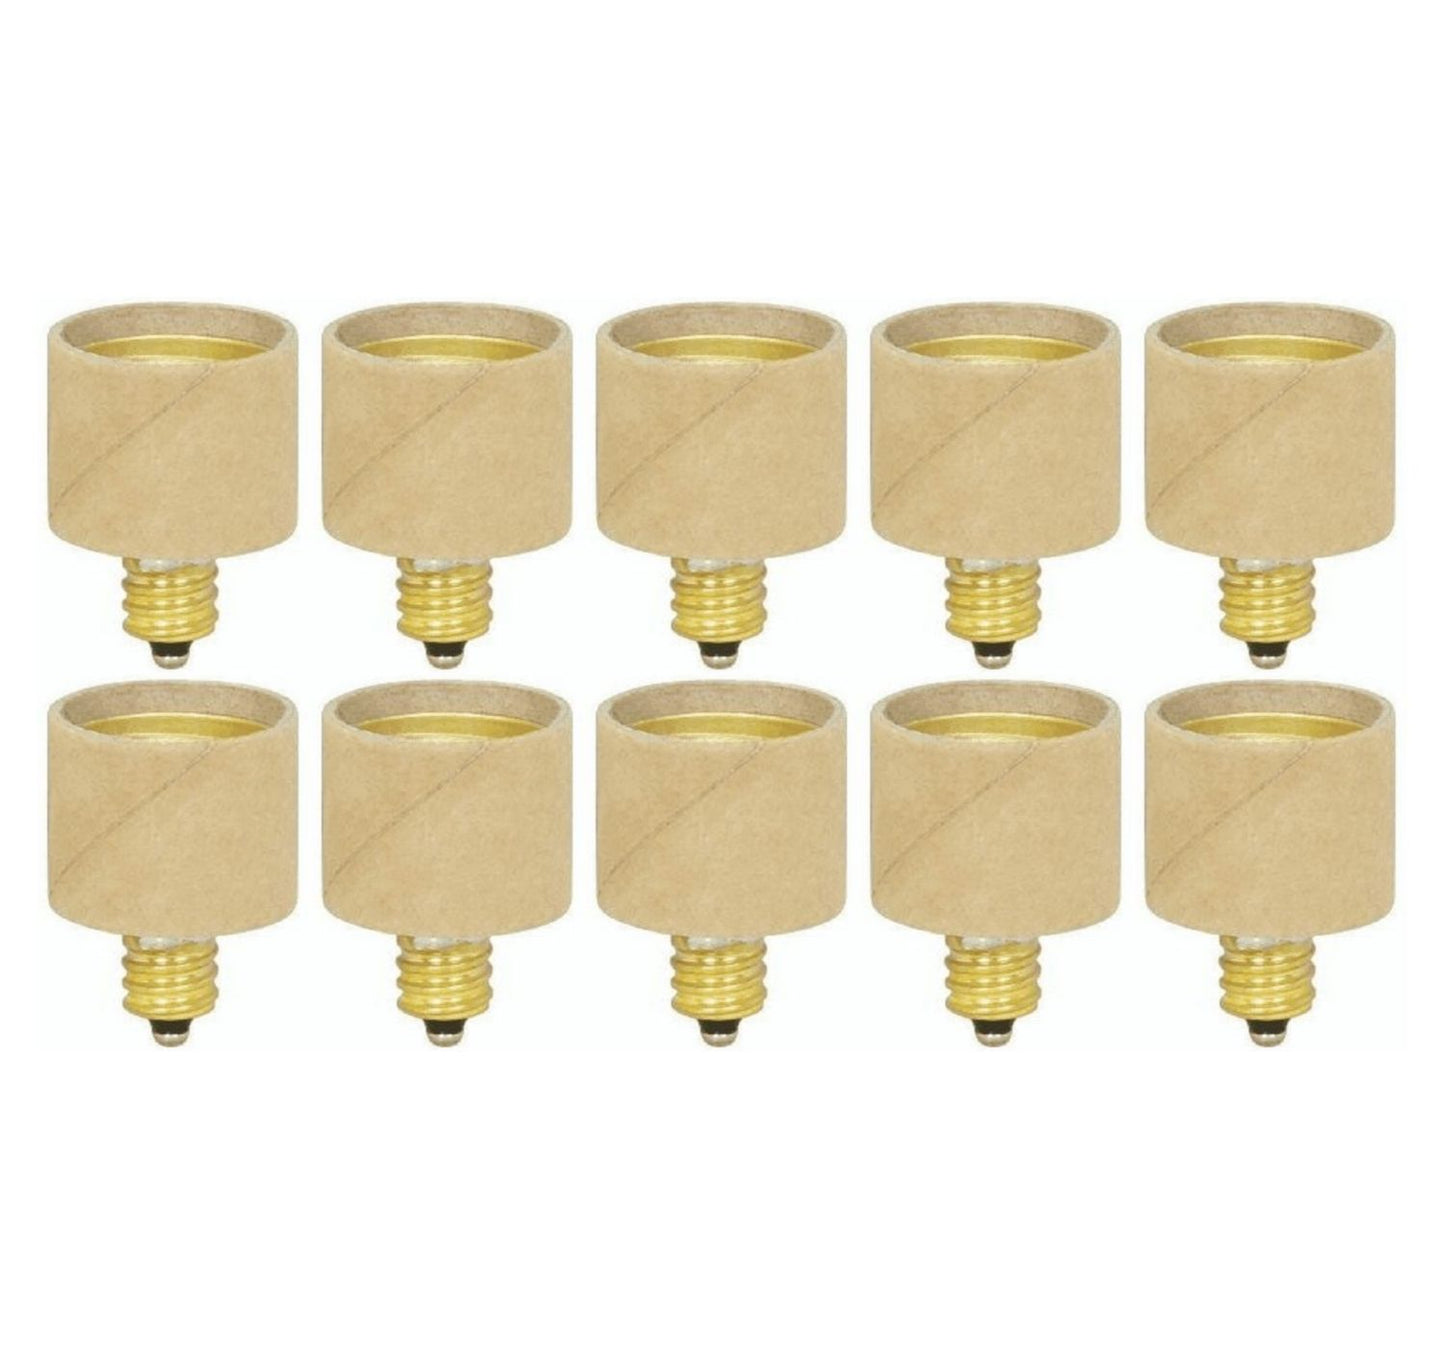 Sterl Lighting Pack Of 10 E12 Candelabra To E26 Medium Base Screw Light Bulb Socket Converter